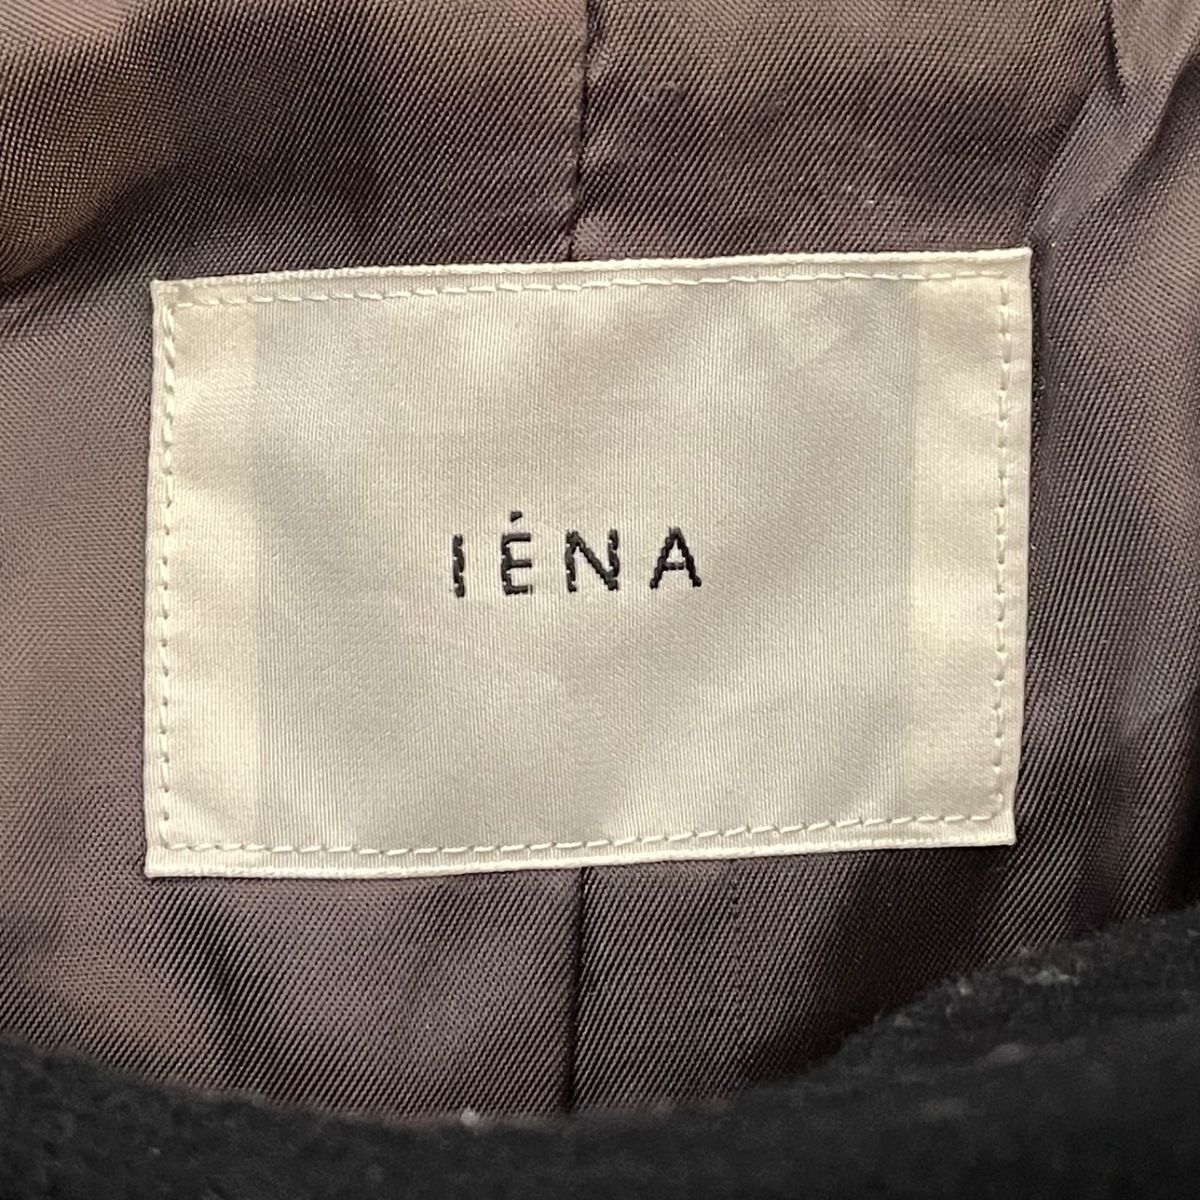 IENA(イエナ) ダッフルコート サイズ36 S レディース - 黒 長袖/冬